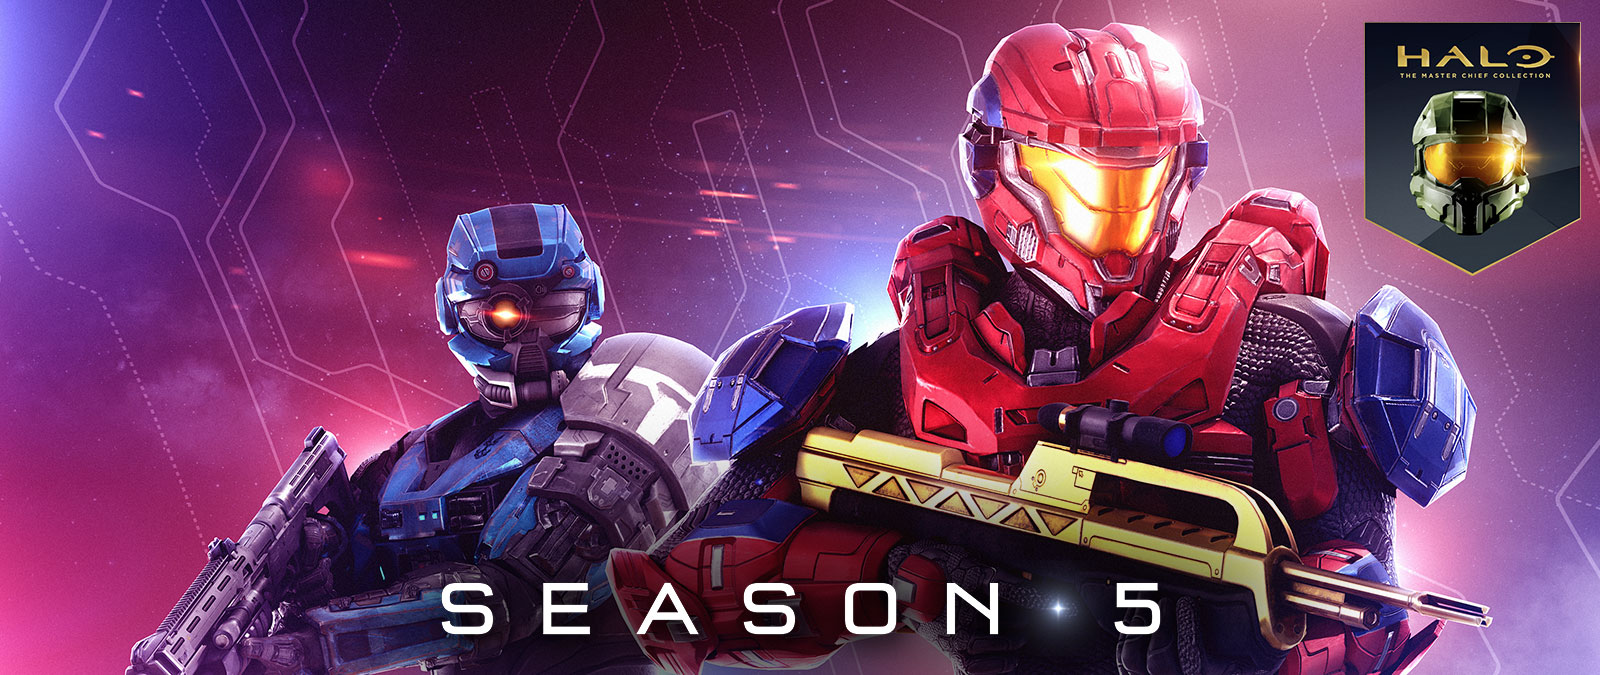 Halo: The Master Chief Collection, Temporada 5, um Spartan vermelho segura um rifle de batalha dourado enquanto um Spartan azul usa um capacete especial com um olho